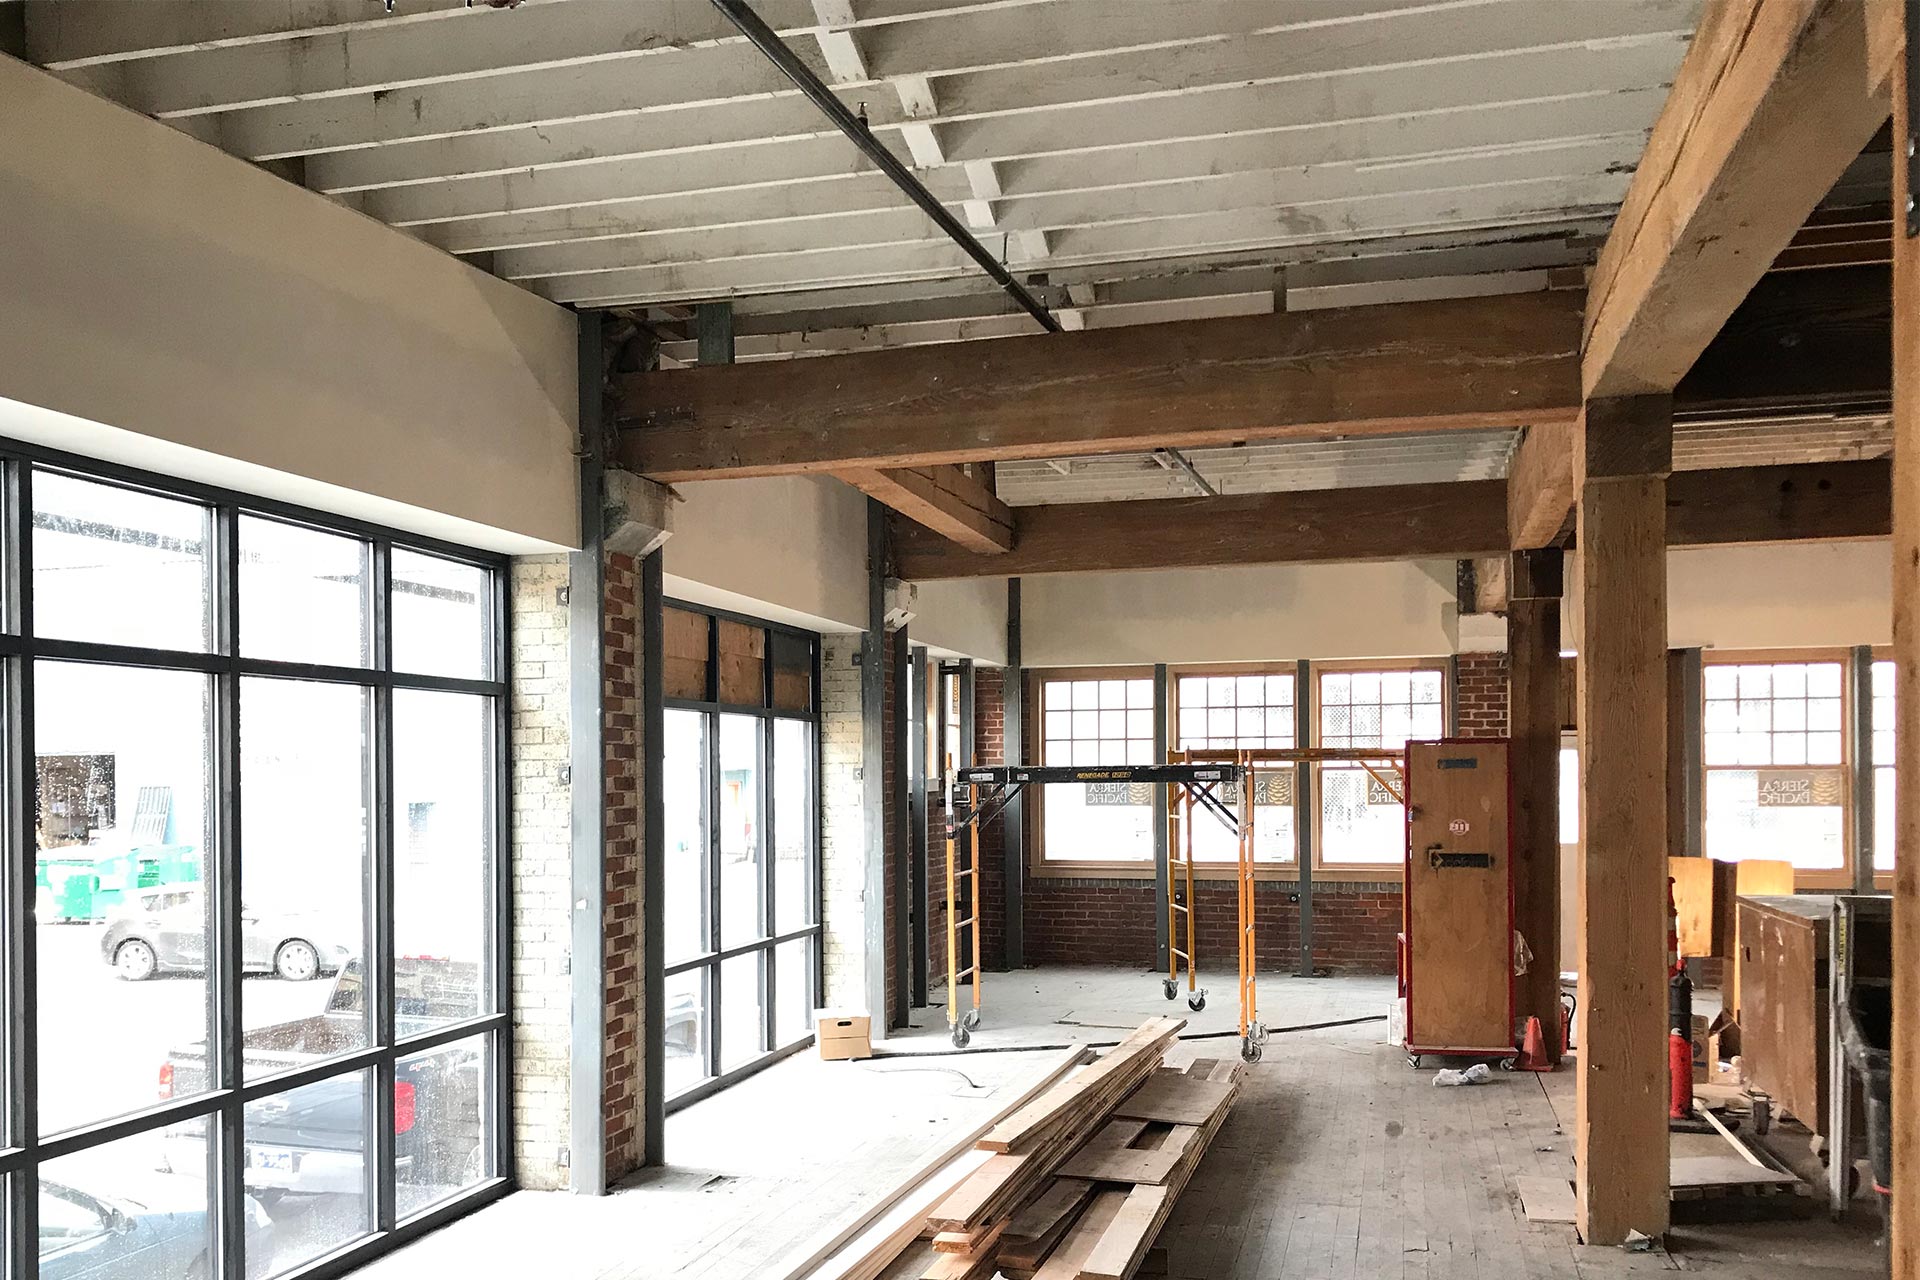 Sandblasted fir timber framing columns and beams at the warehouse renovation.